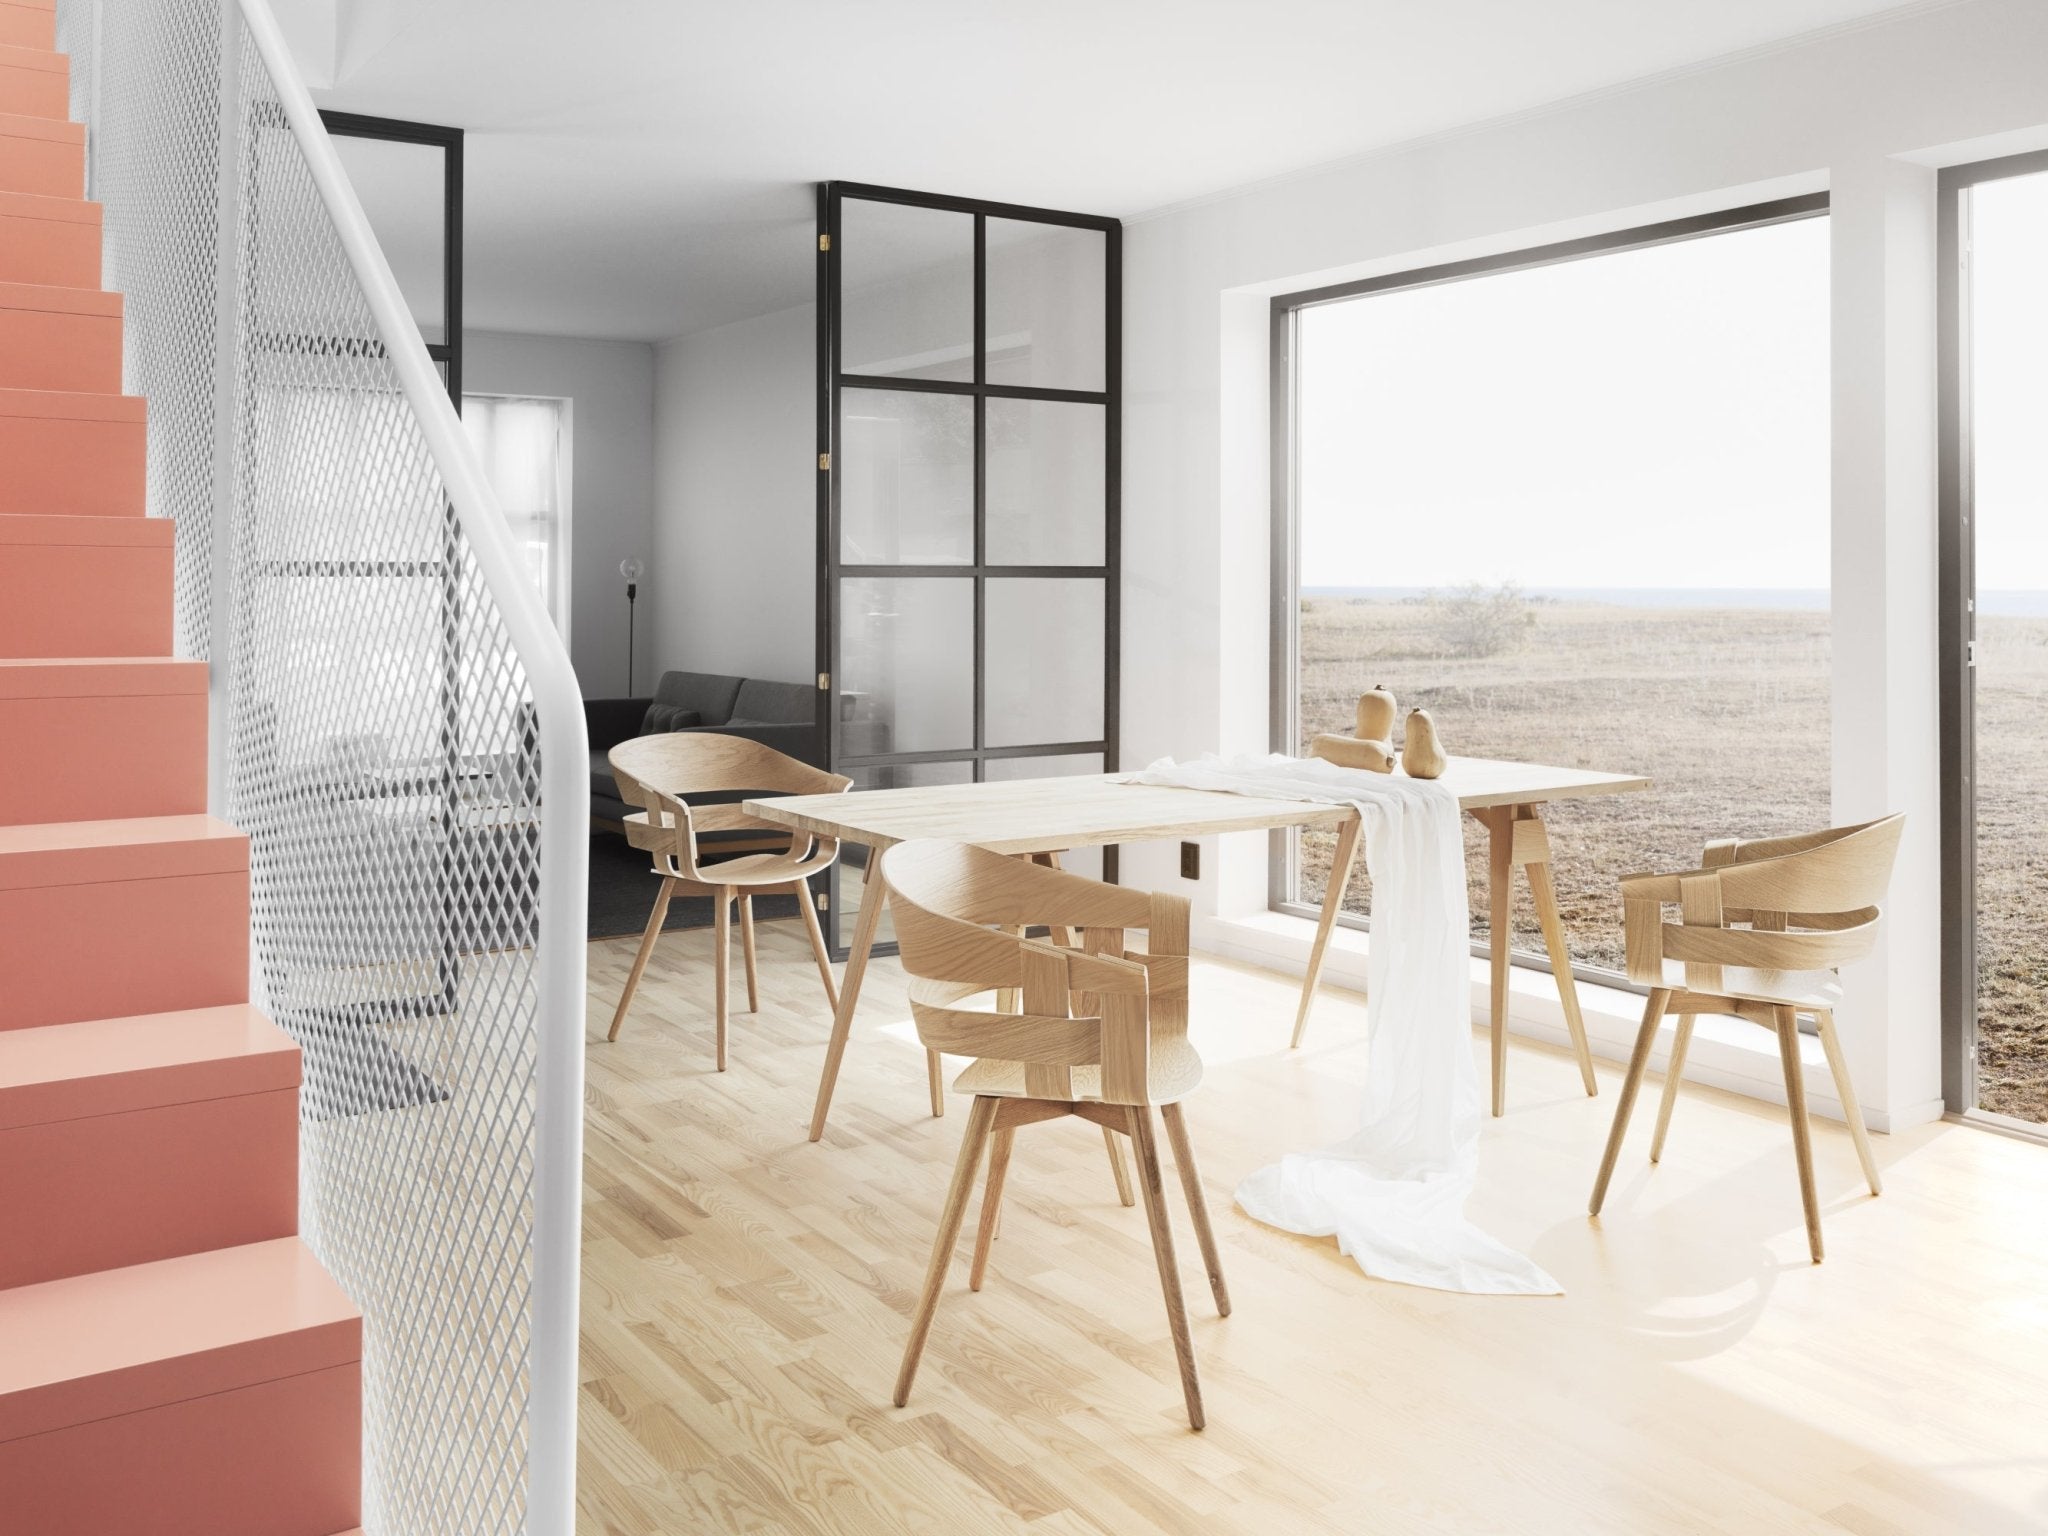 Design House Stockholm Wick tuoli tammi - Laatukaluste